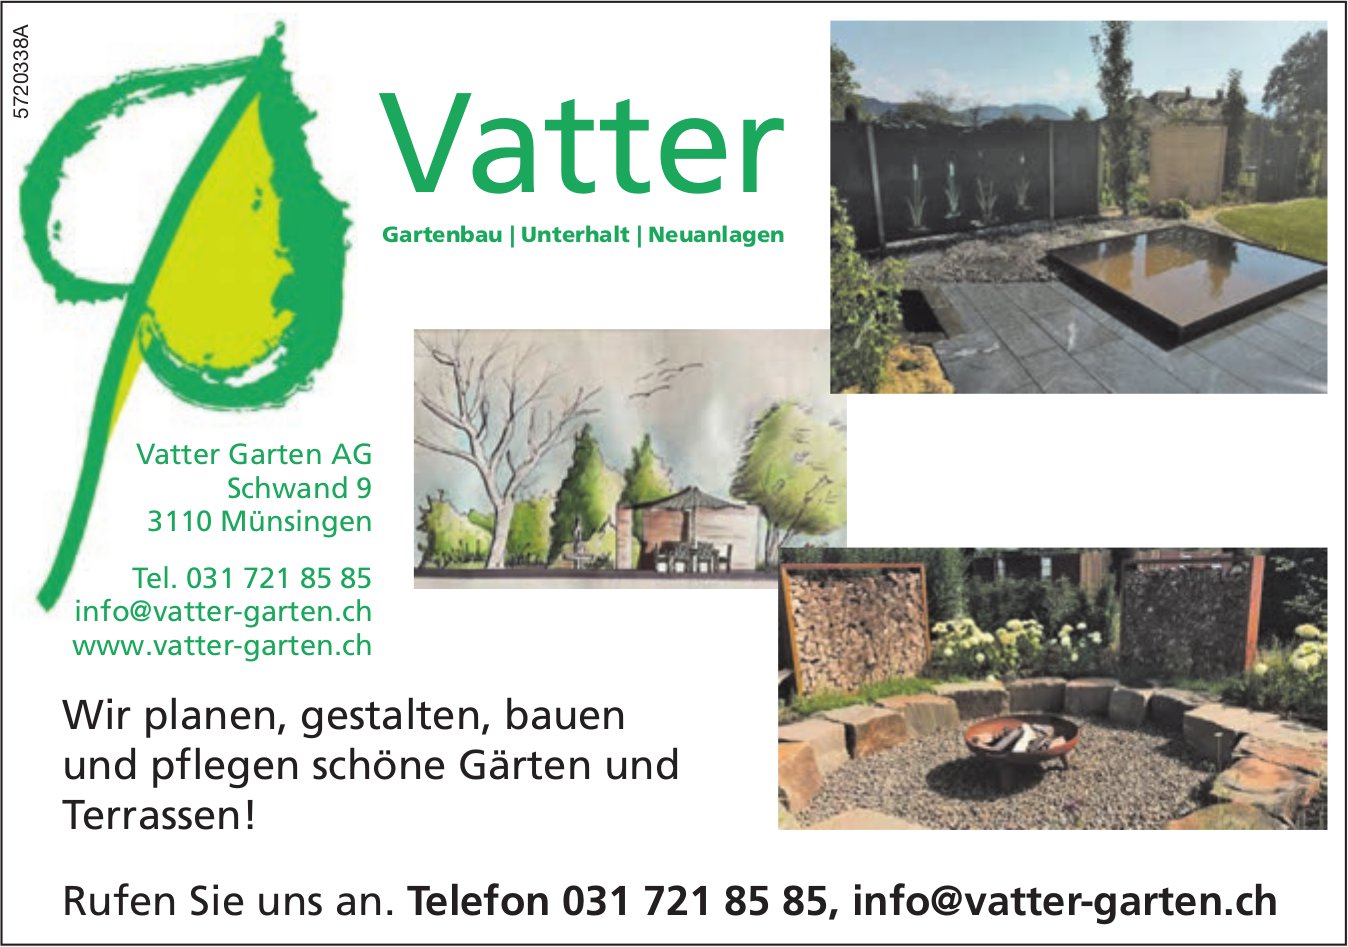 Vatter Garten AG, Münsingen - Wir planen, gestalten,  bauen und pflegen schöne Gärten und Terrassen!